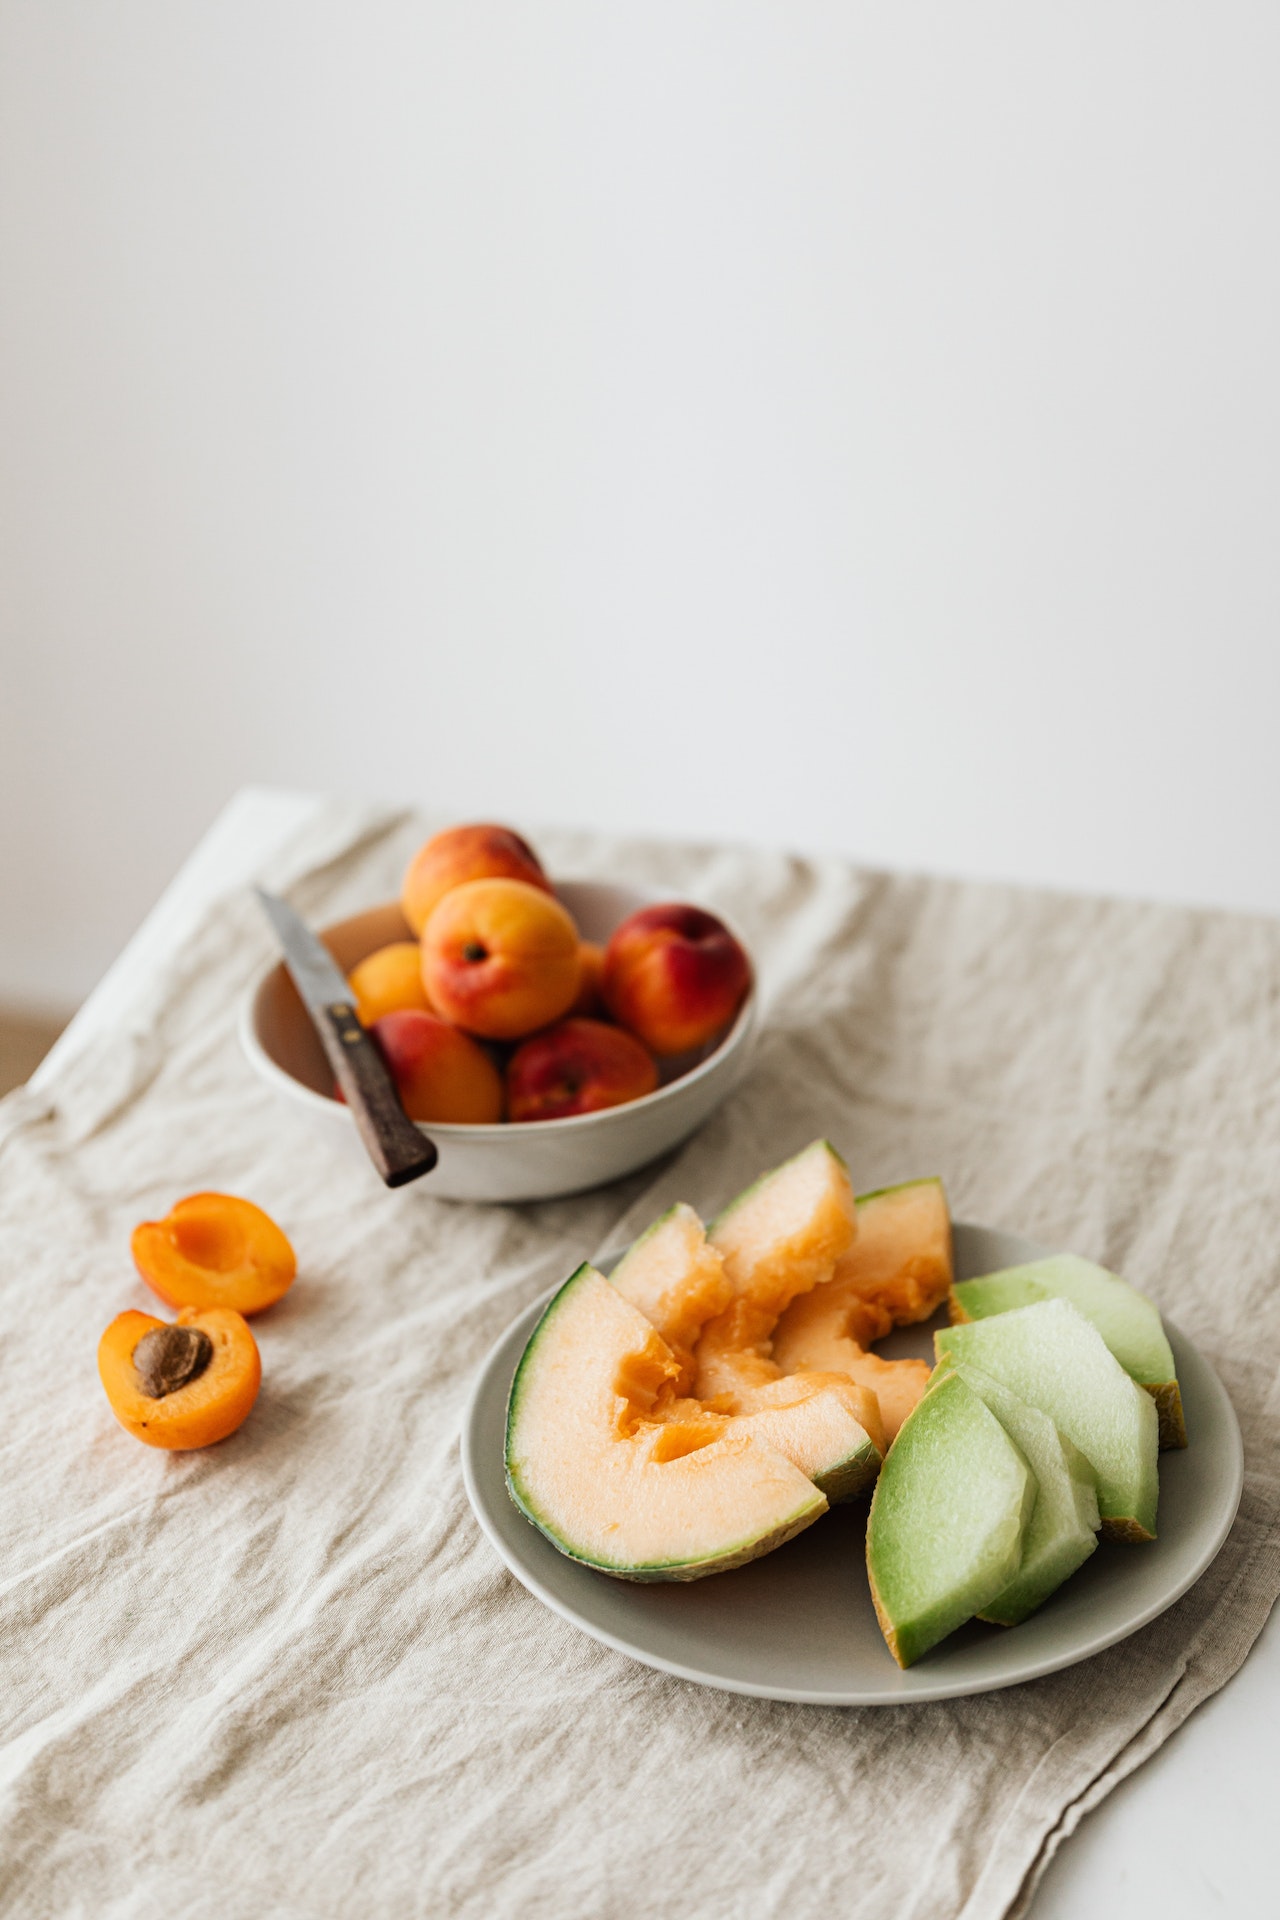 Σαλάτα με πεπόνι με ginger και lime: Μια δροσερή γευστική πρόταση για ένα ελαφρύ βραδινό γεύμα